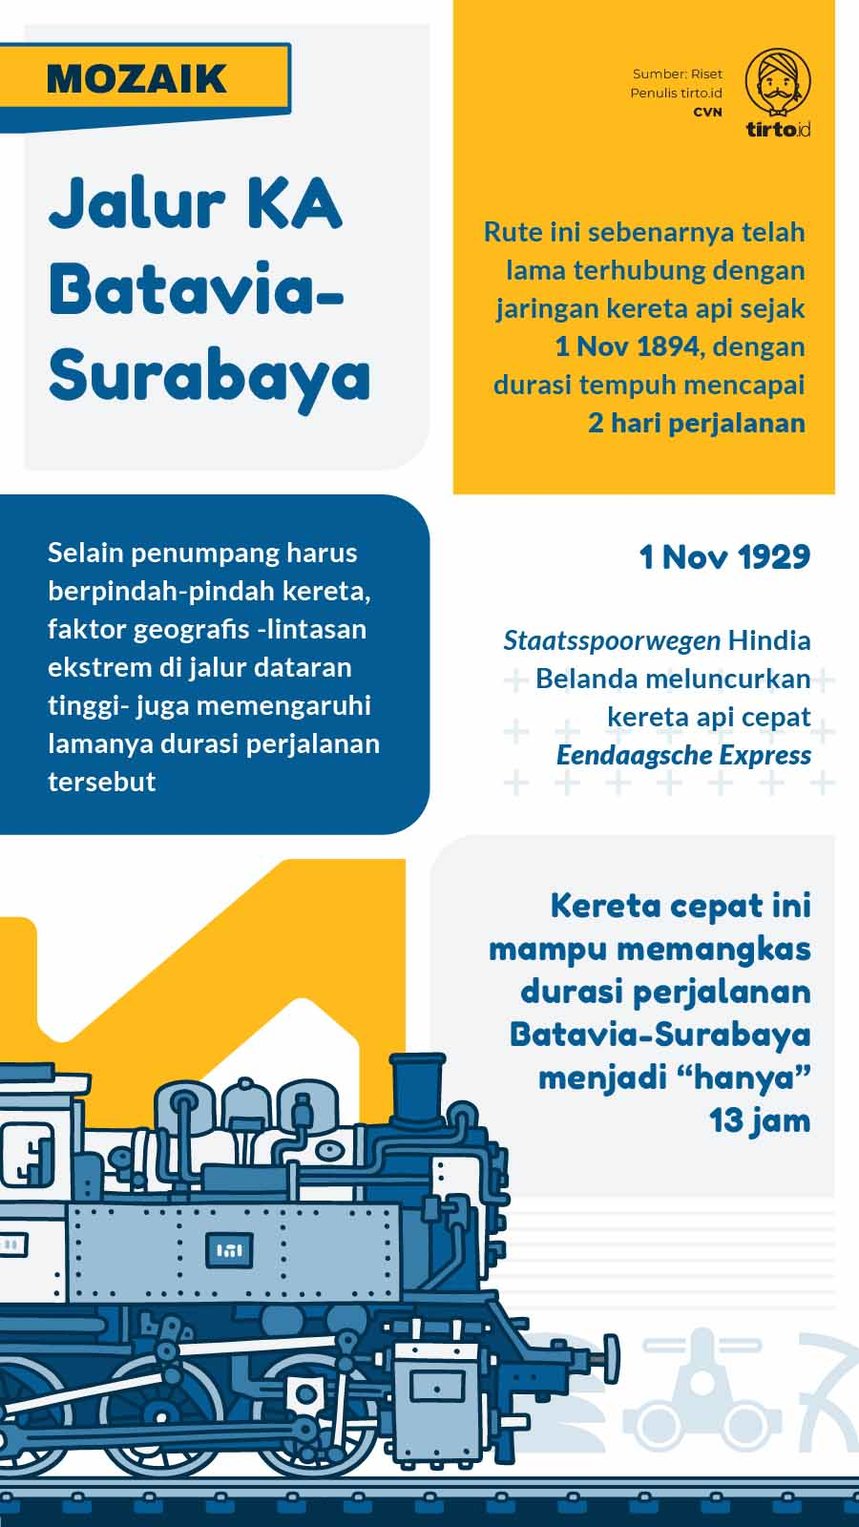 Infografik Mozaik Jalur KA Batavia Surabaya